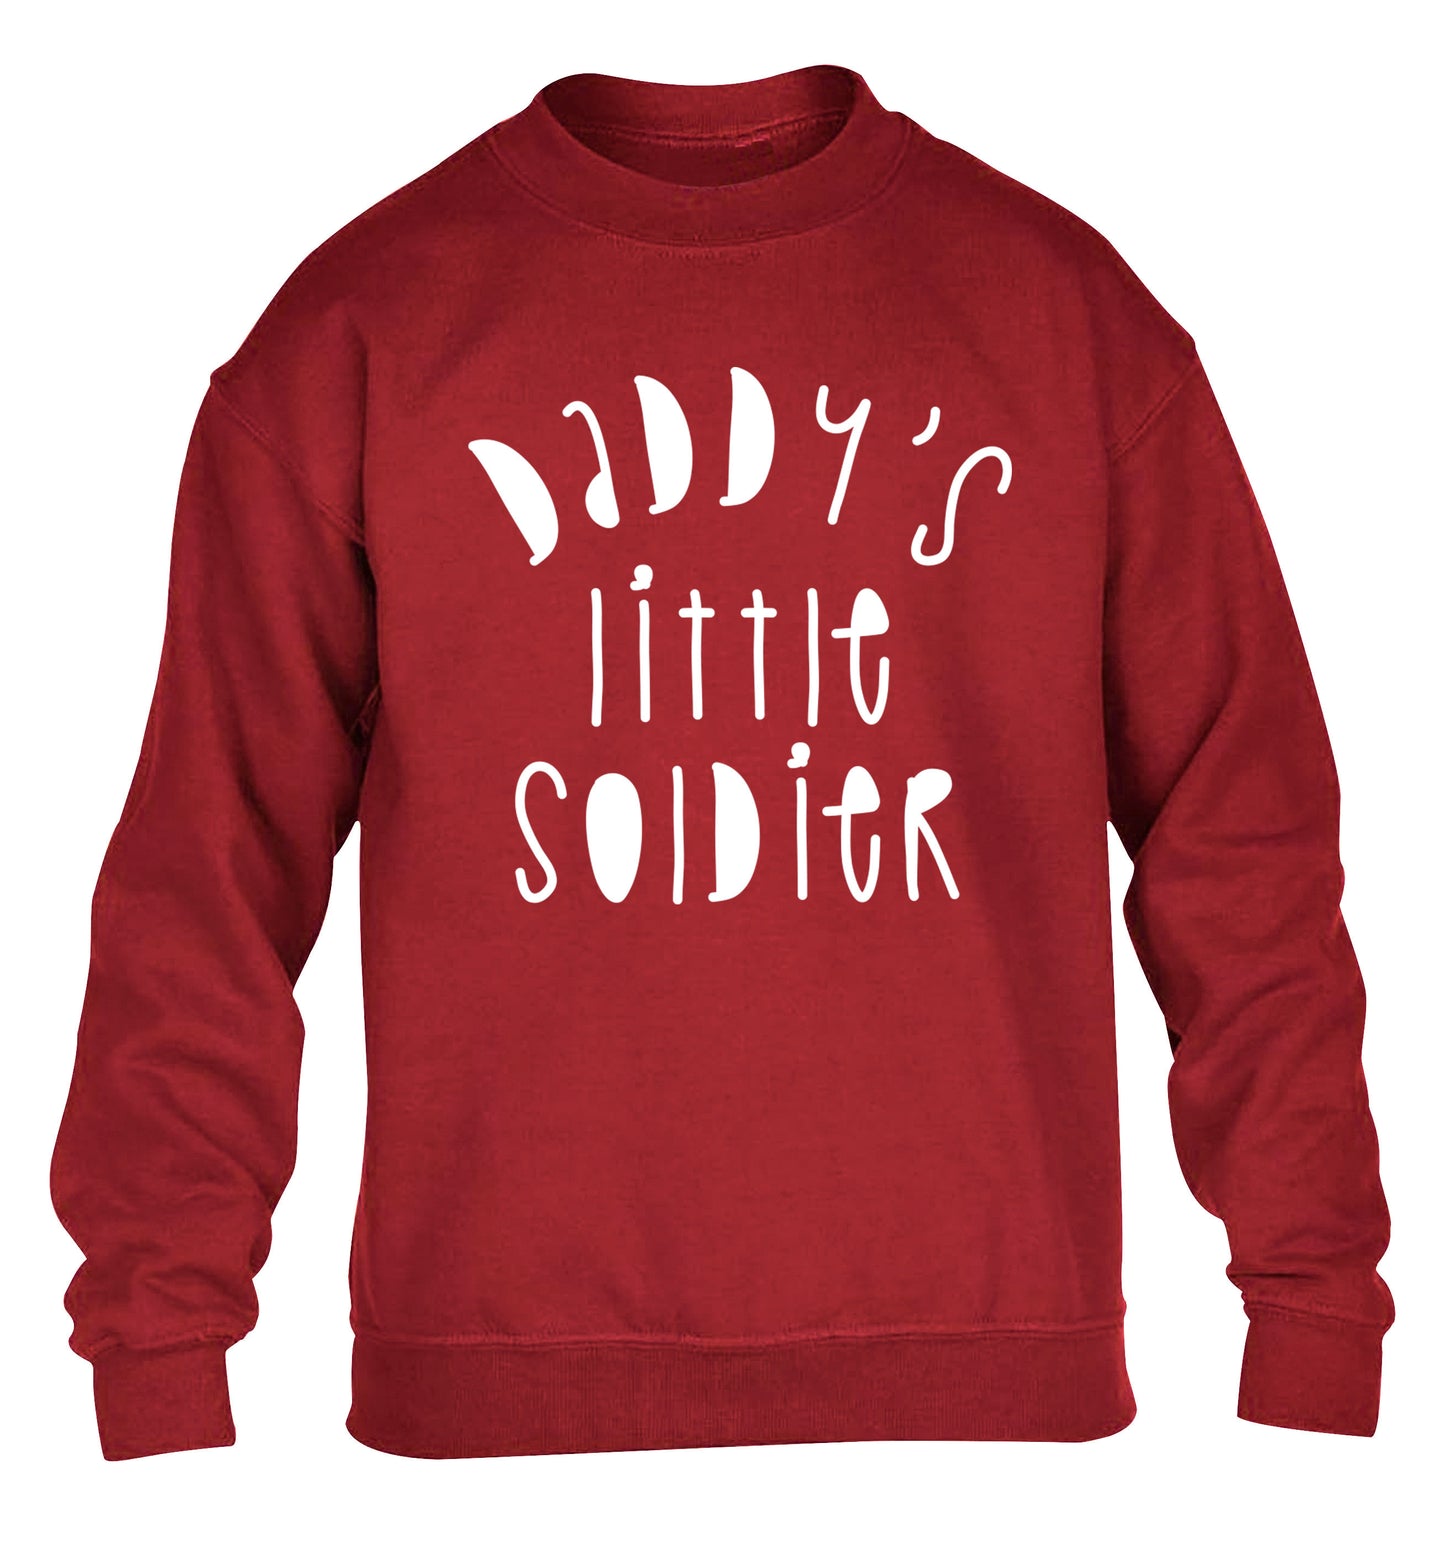 Daddy's little soldier children's grey sweater 12-14 Years